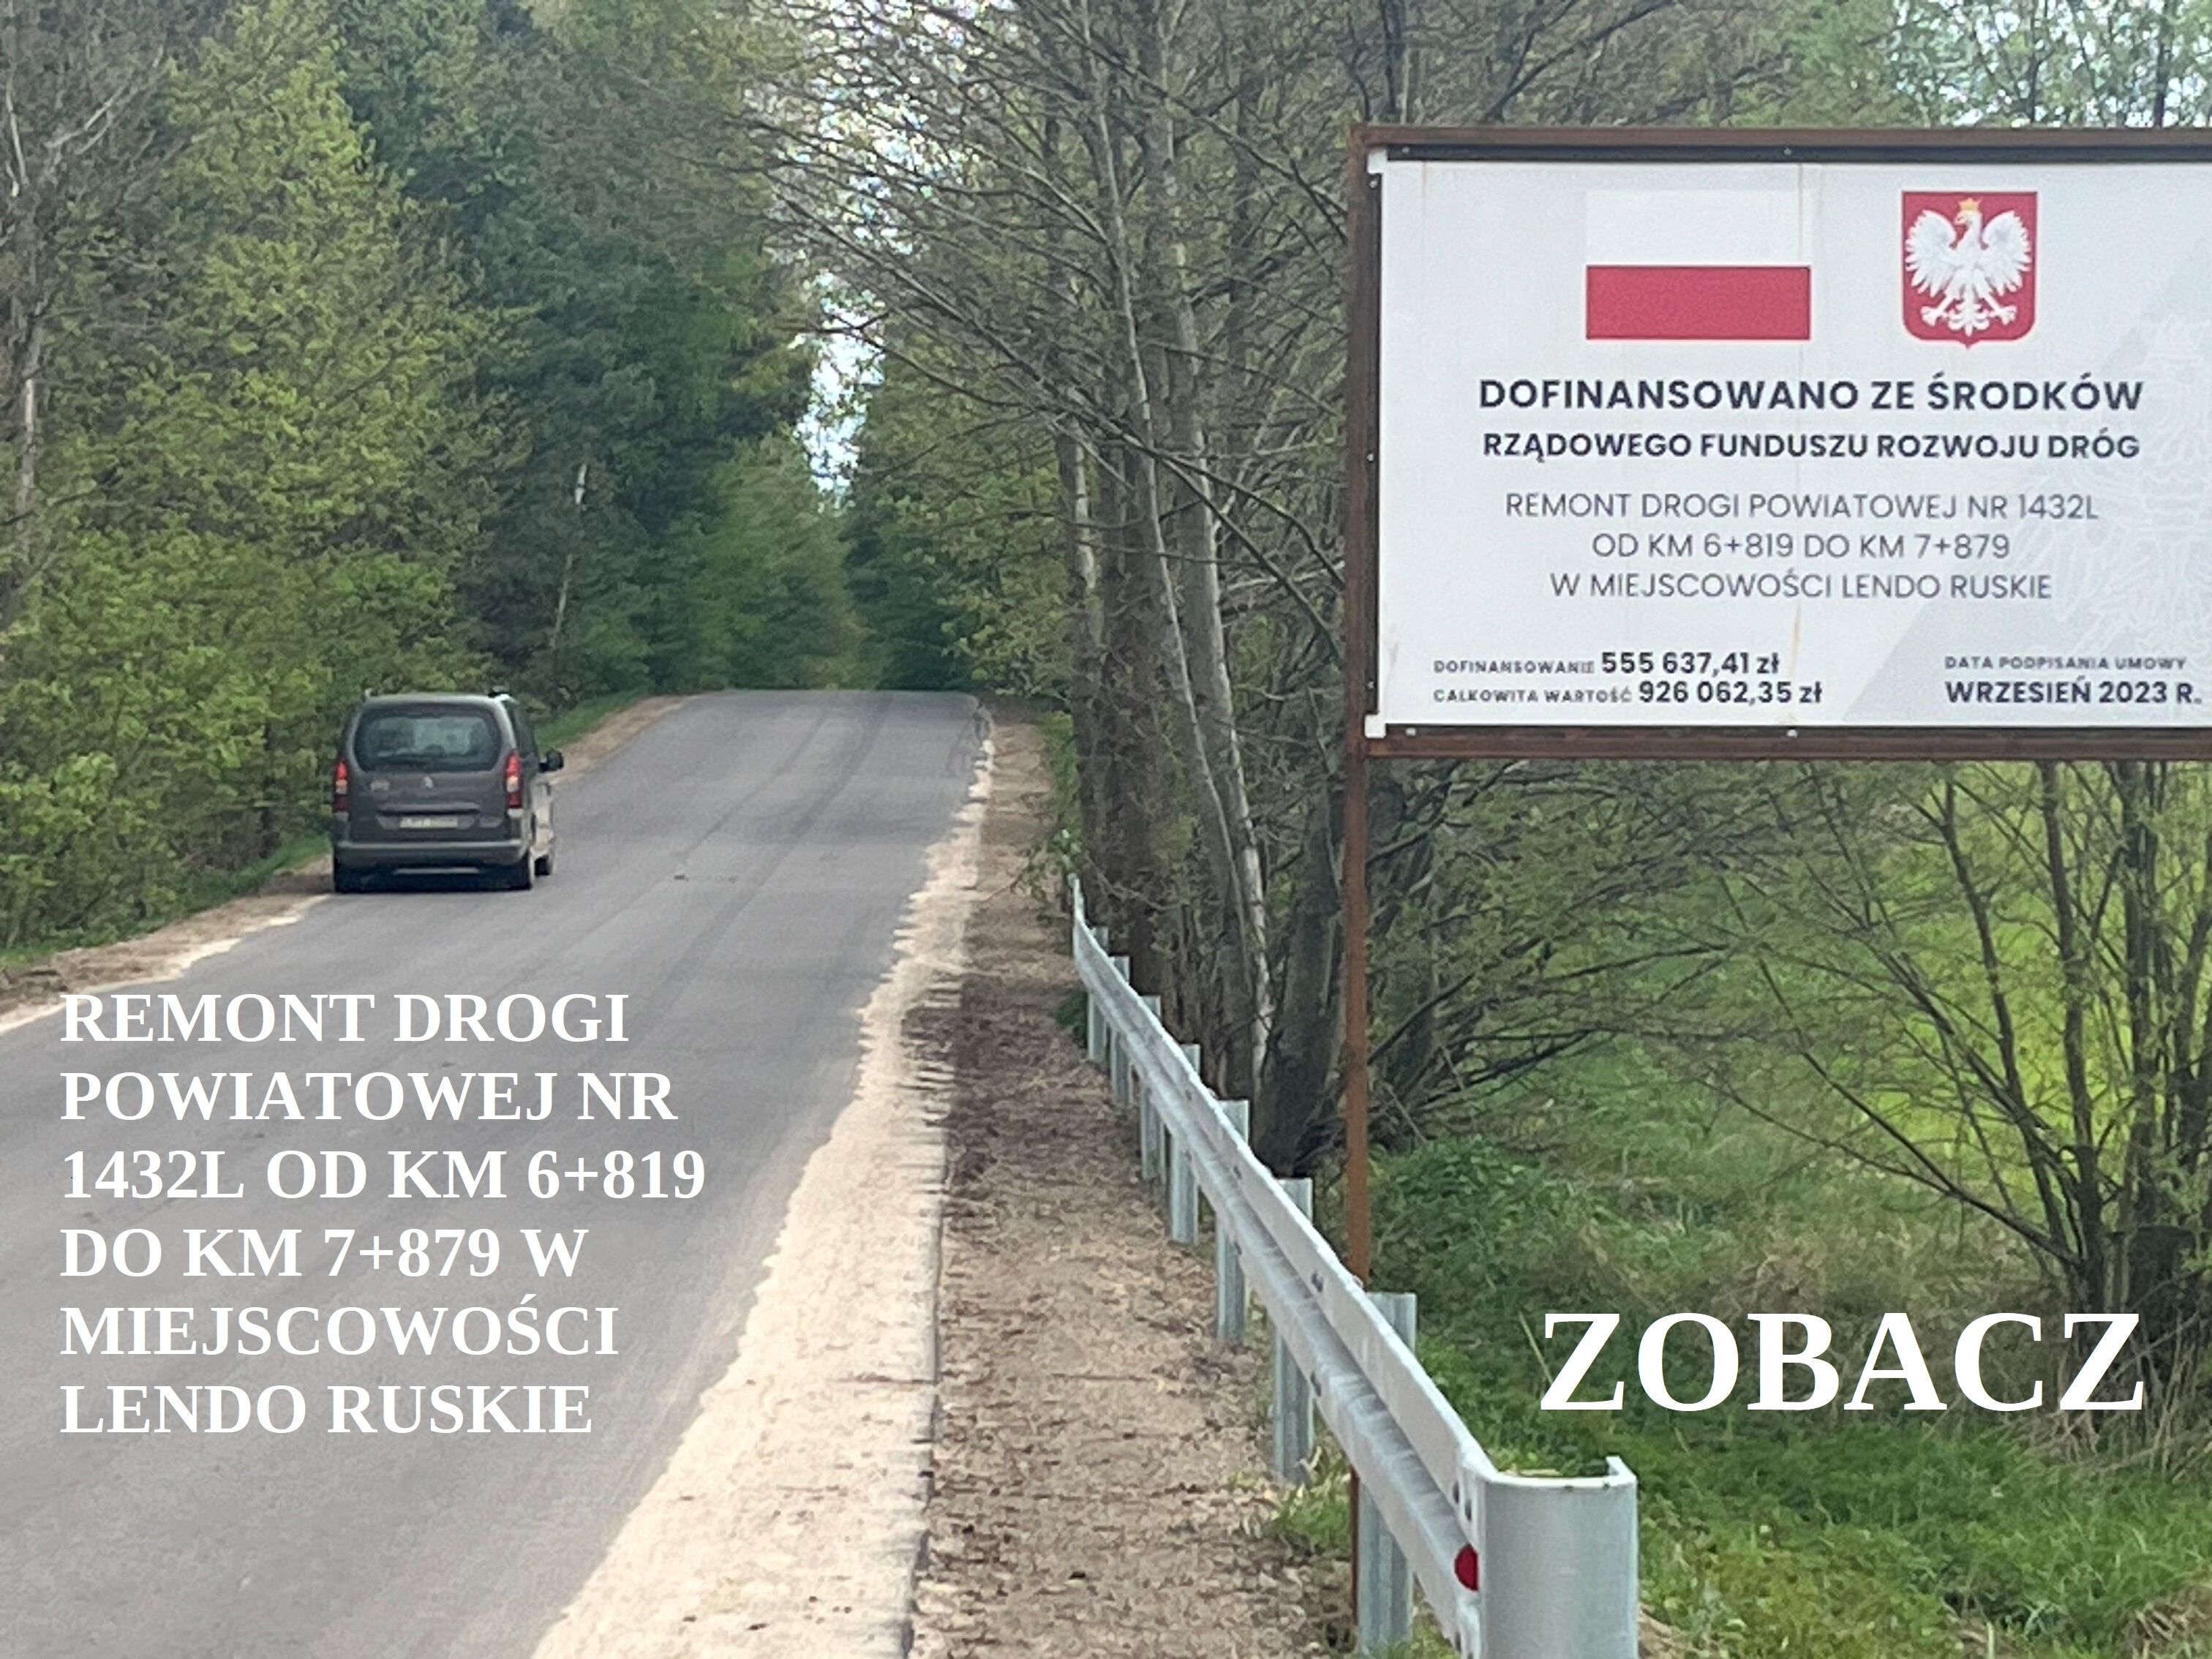 Ulica w otoczeniu zielonych drzew, po lewej stronie czerwono-białe ogrodzenie i znak informujący o remoncie drogi z herbem Polski.